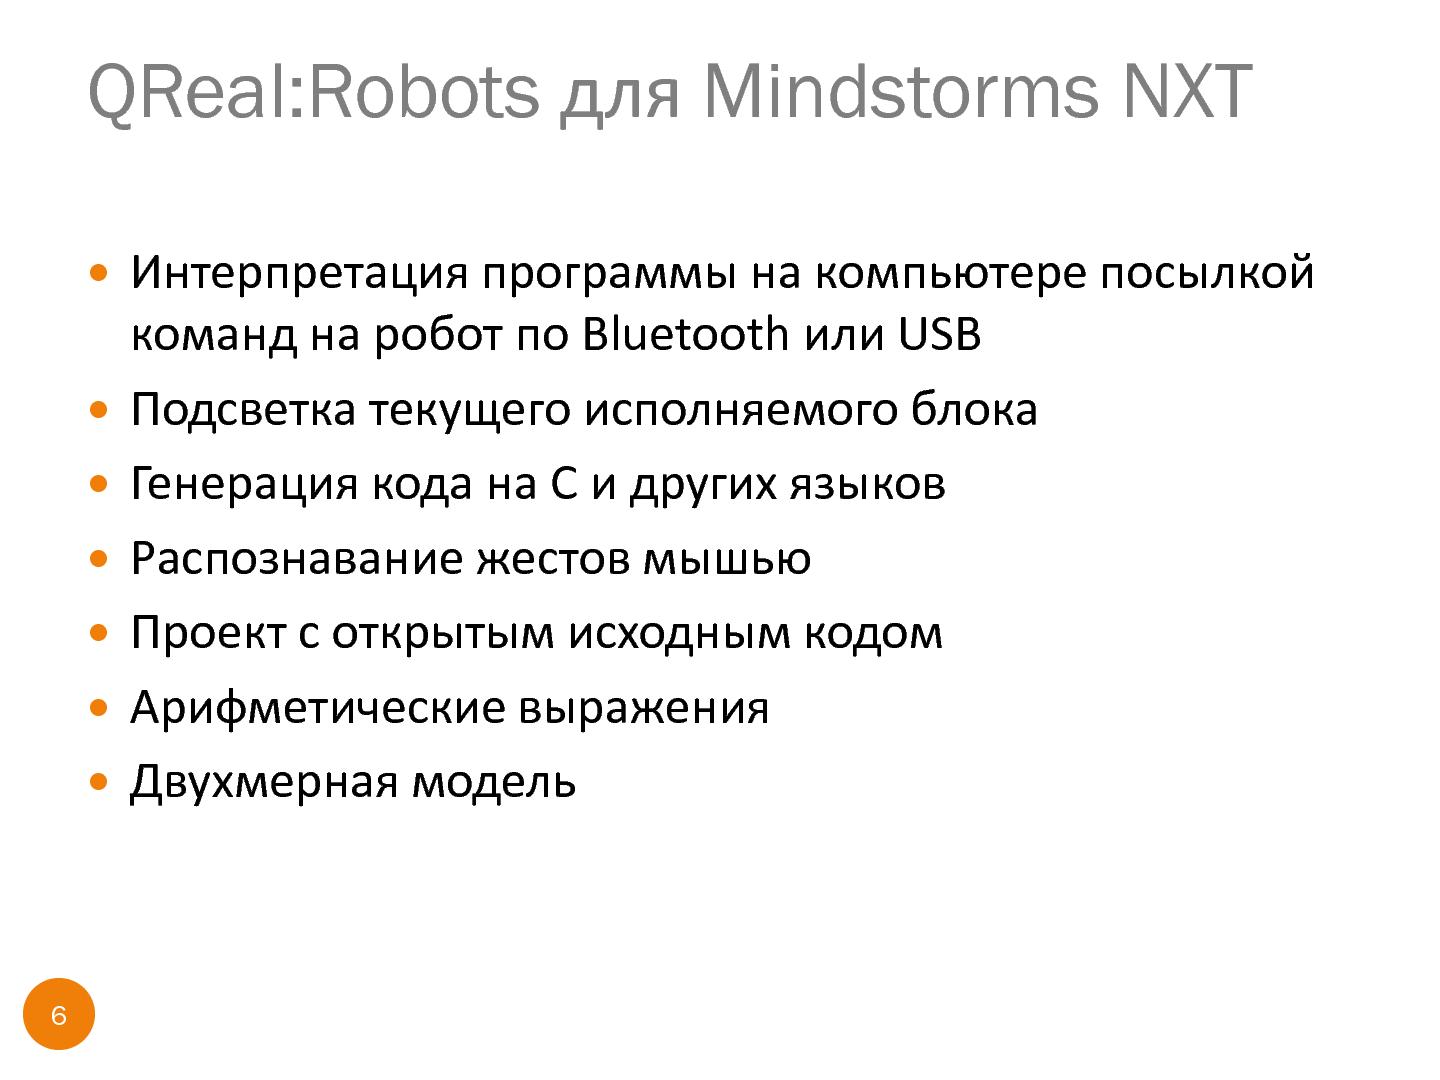 Файл:Среда для обучения информатике и робототехнике QReal@Robots (Юрий Литвинов, SECR-2013).pdf